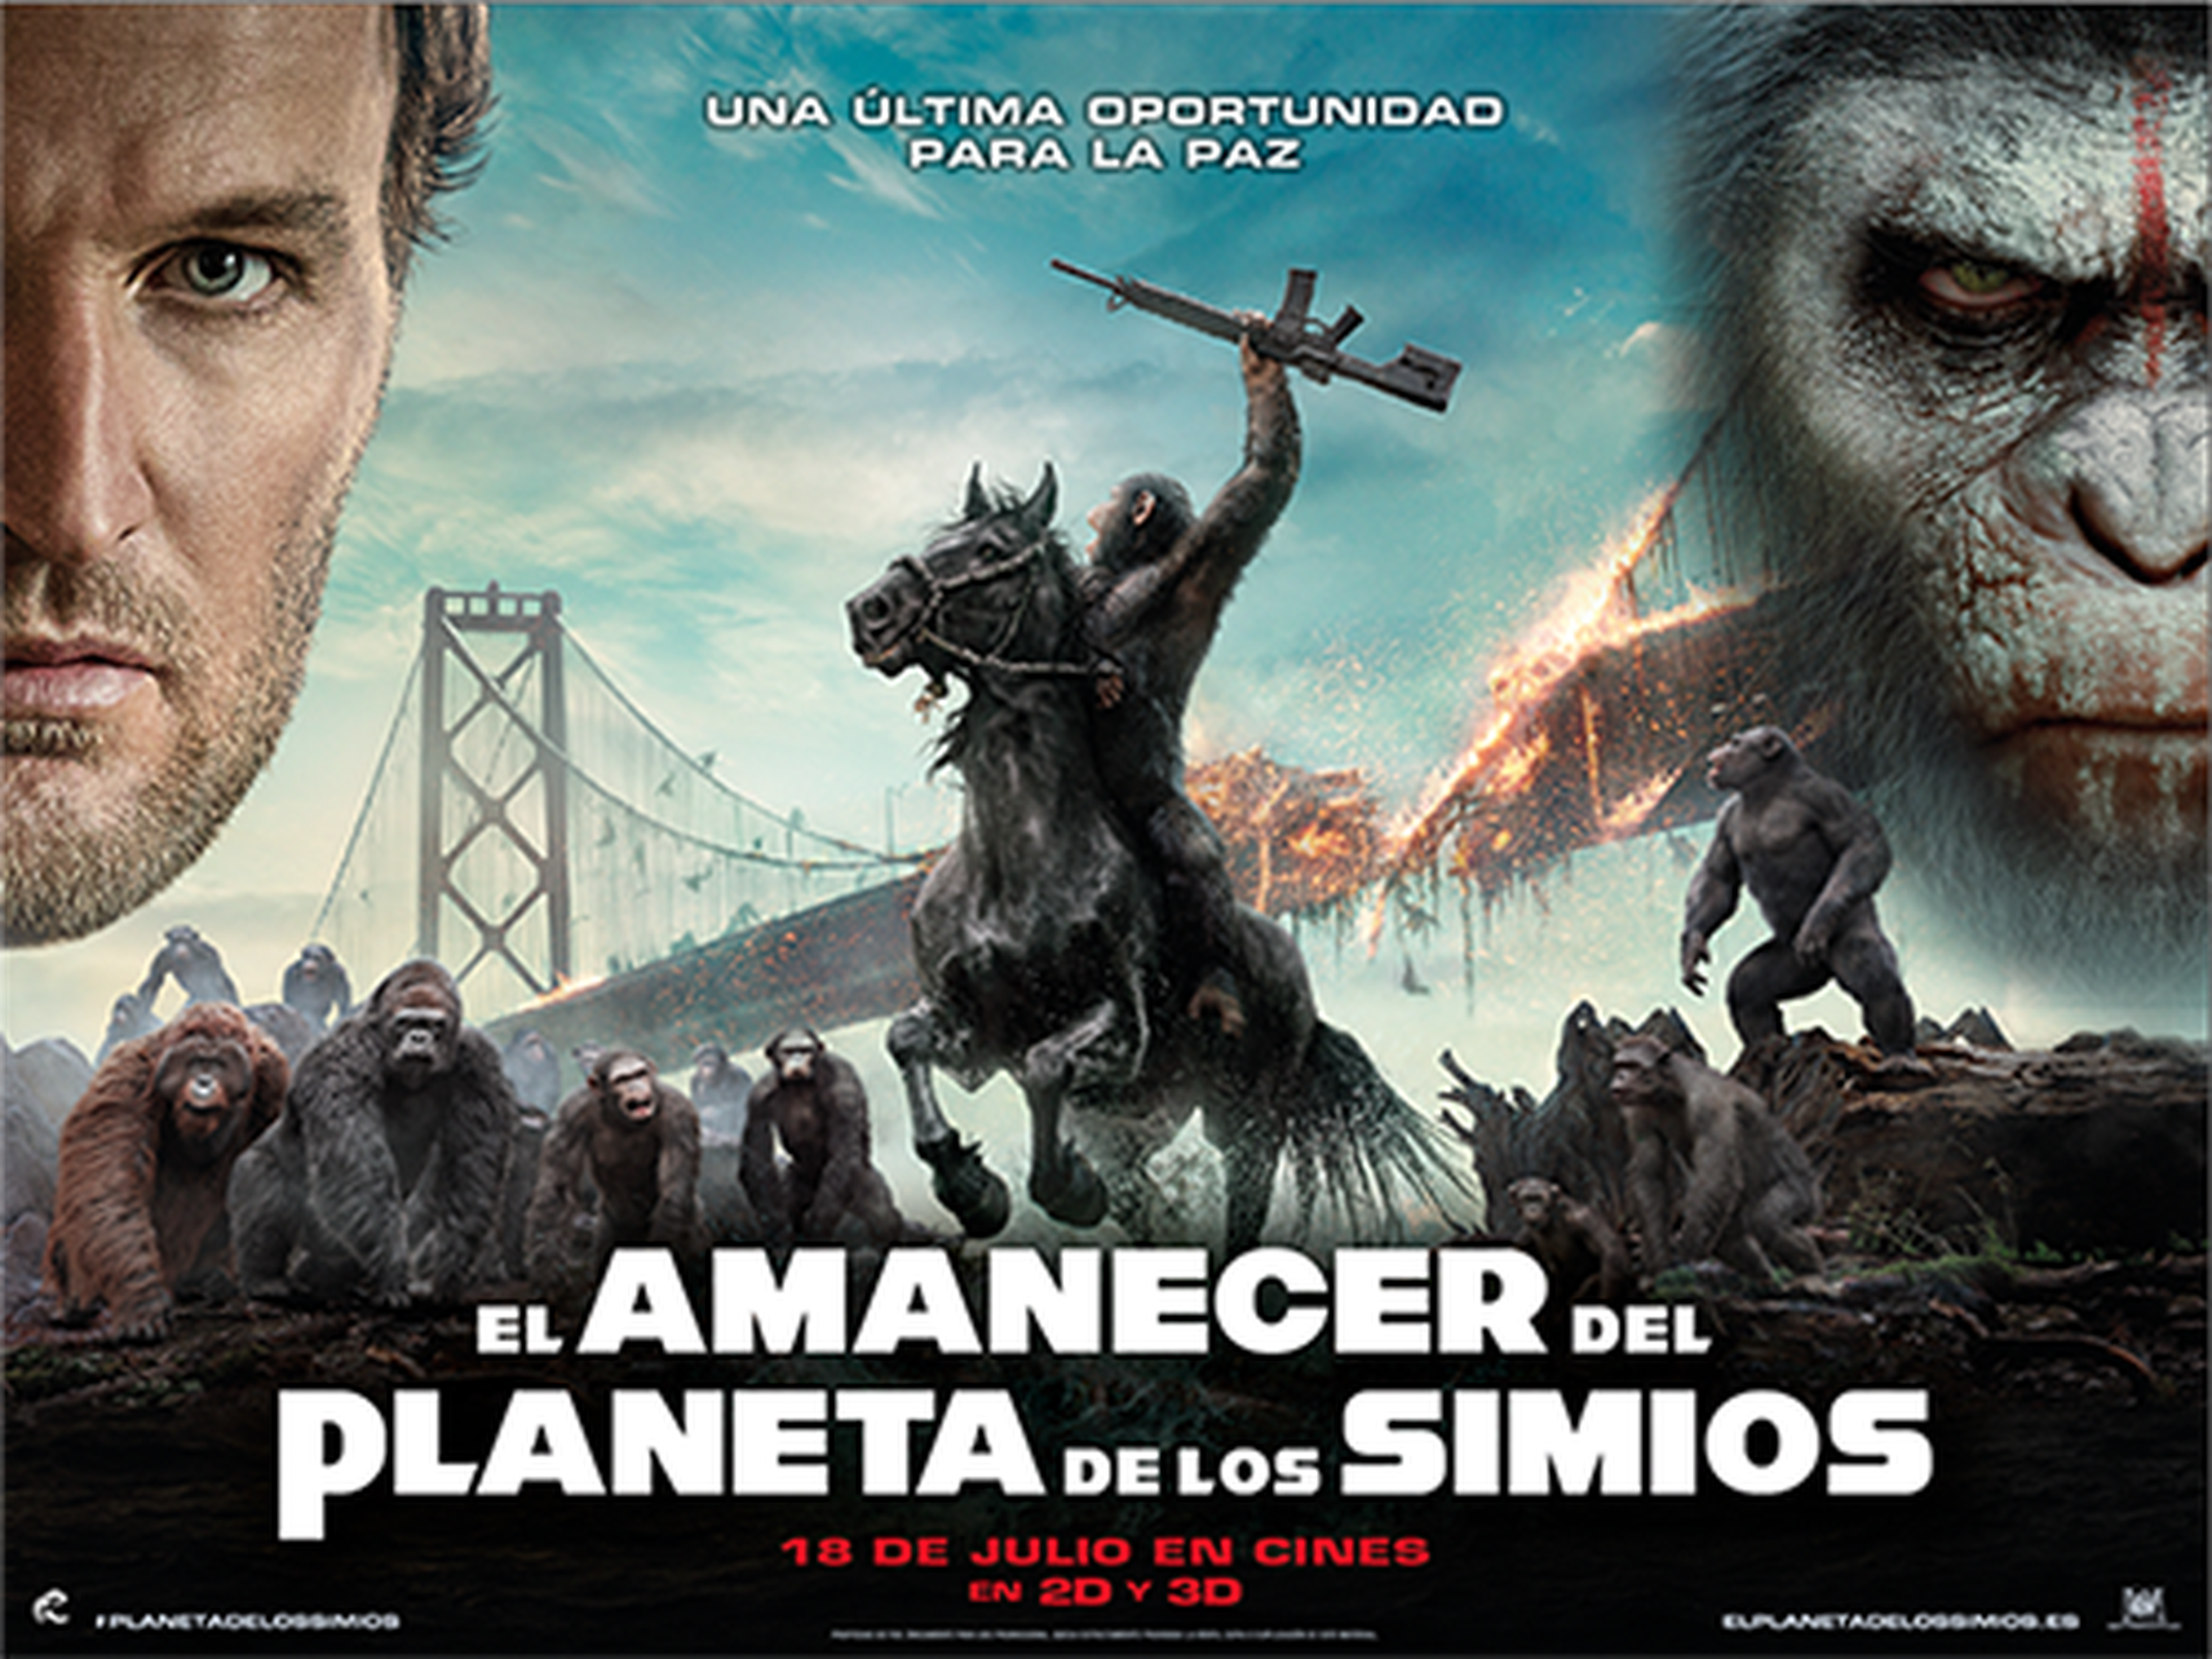 Восстание обезьян революция. Планета обезьян: революция (2014). Планета обезьян революция. Восстание планеты обезьян революция.